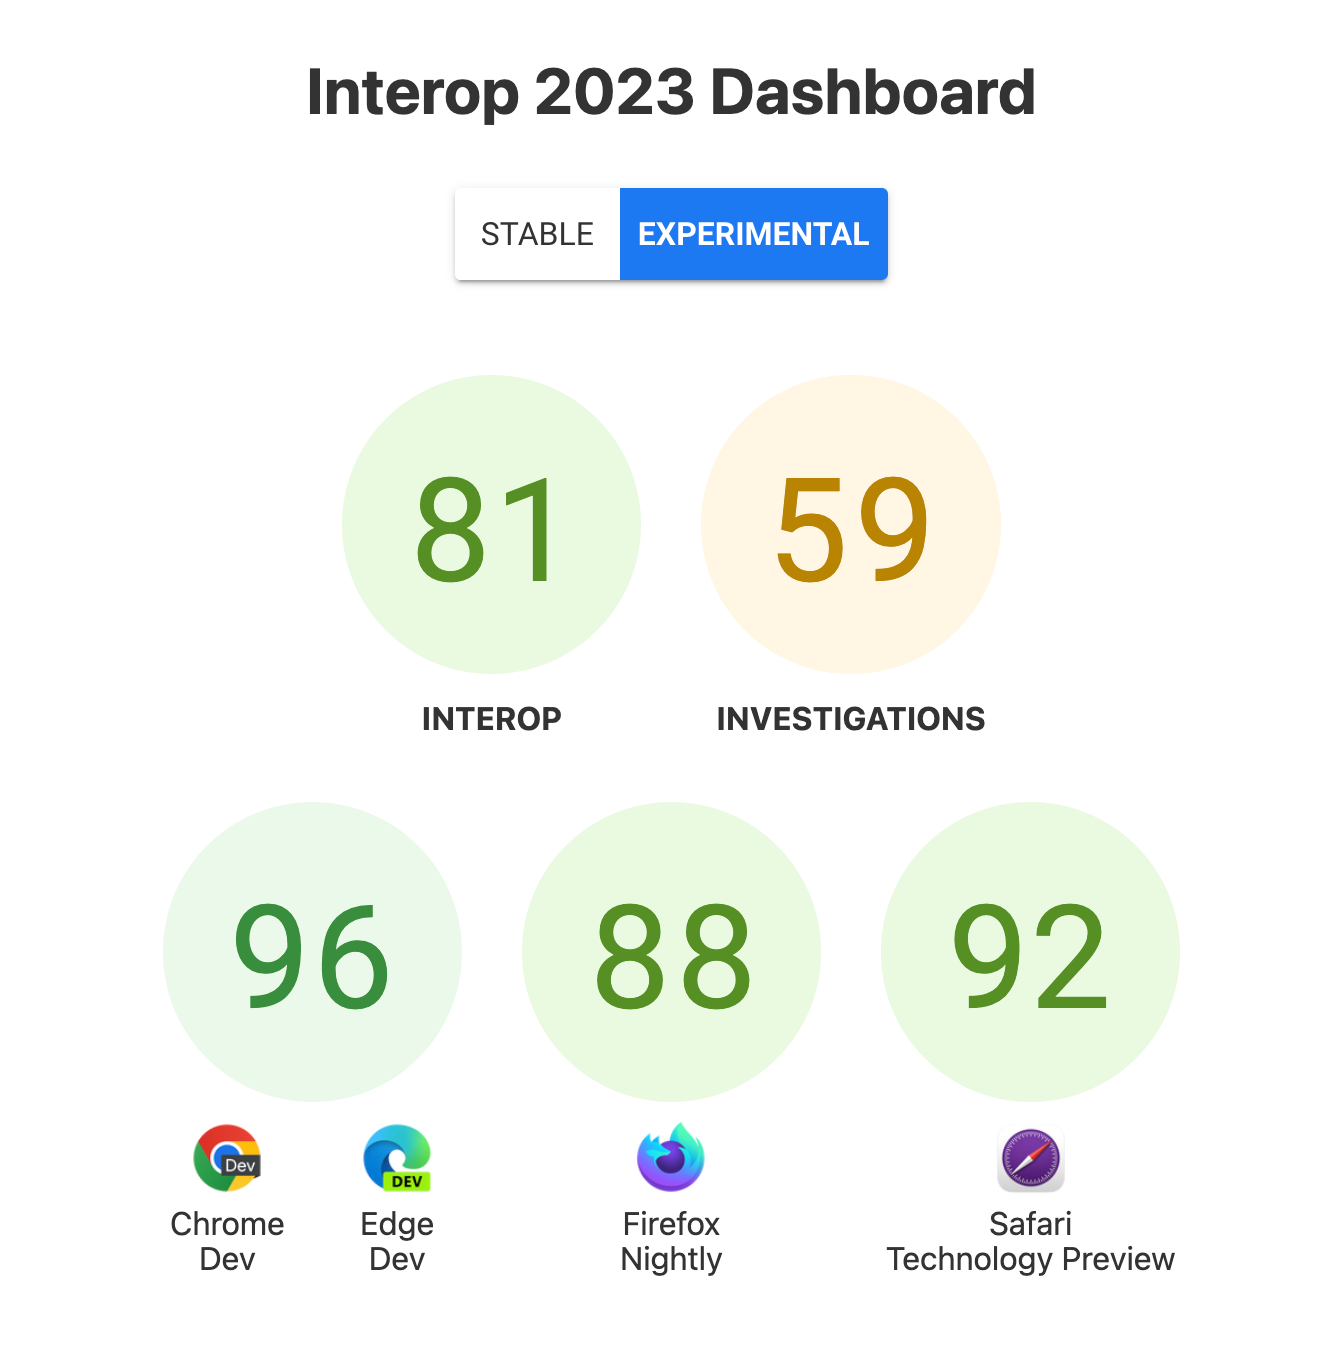 Interop 全体のスコアは、81 点、Investigations 59 点、ブラウザあたり 96 点、Chrome Dev と Edge Dev で 96 点、Firefox Nightly で 88 点、Safari Technology Preview で 92 点でした。